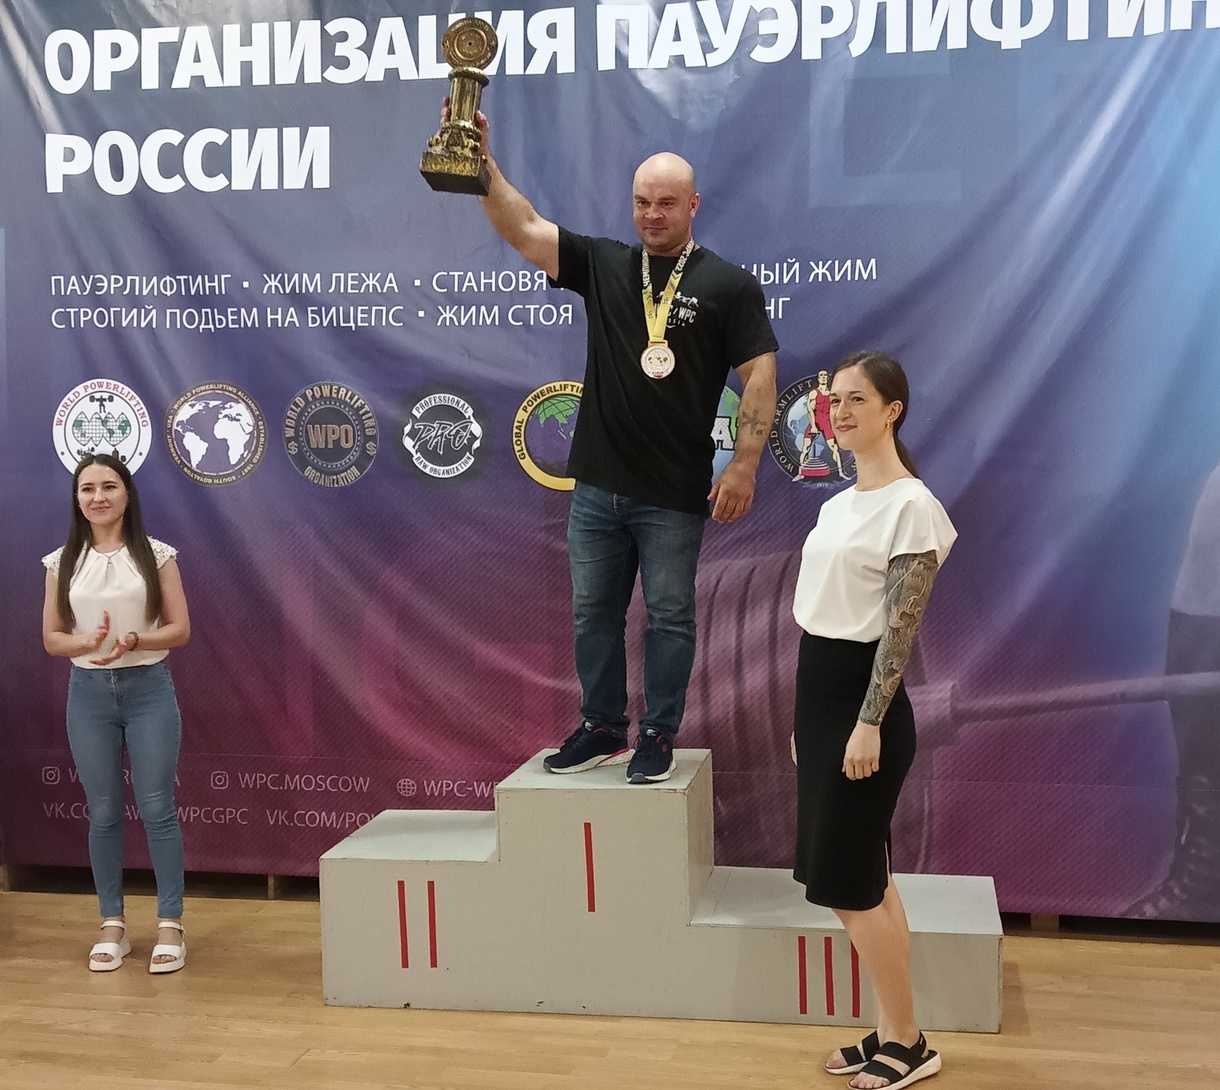 Брянец Сергей Белохонов произвел фурор на чемпионате по пауэрлифтингу